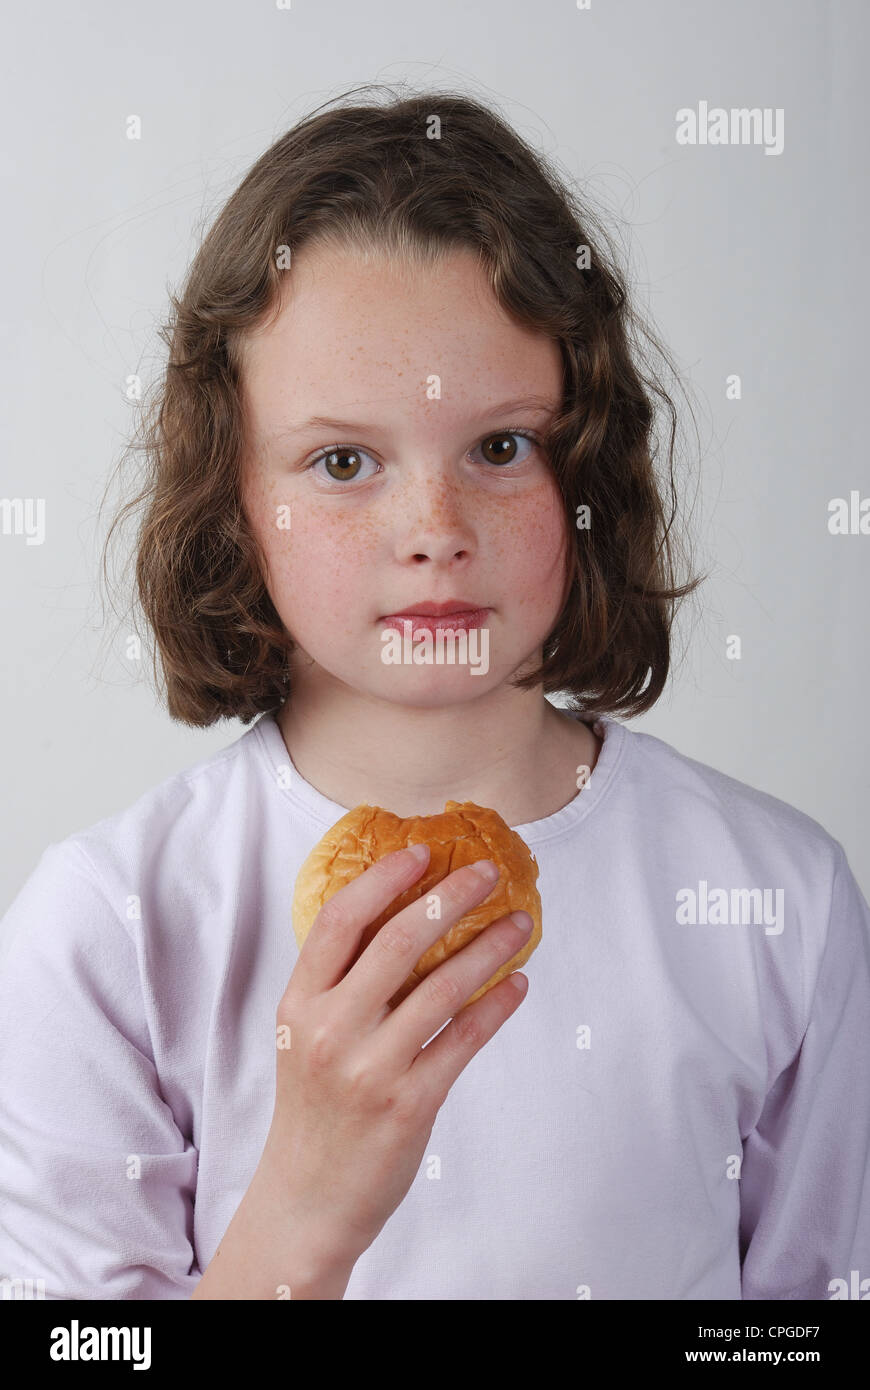 A young girl eating a bun Stock Photo